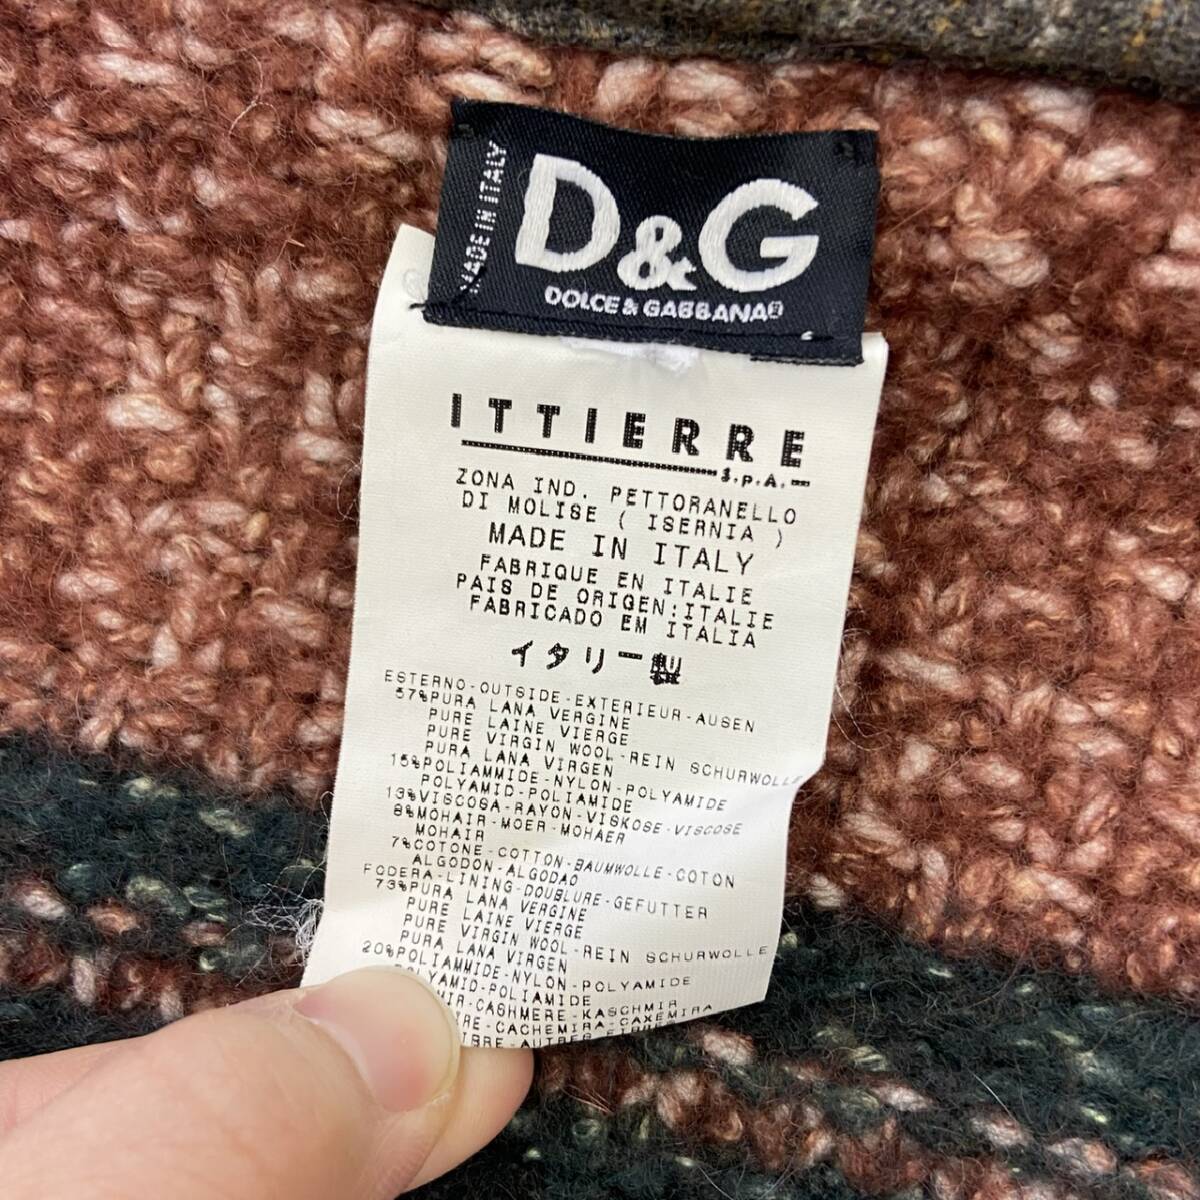  Италия производства DOLCE&GABBANA полупальто "даффл коут" Dolce & Gabbana D&G Dolce&Gabbana длинное пальто свободная домашняя одежда жакет Made in ITALY